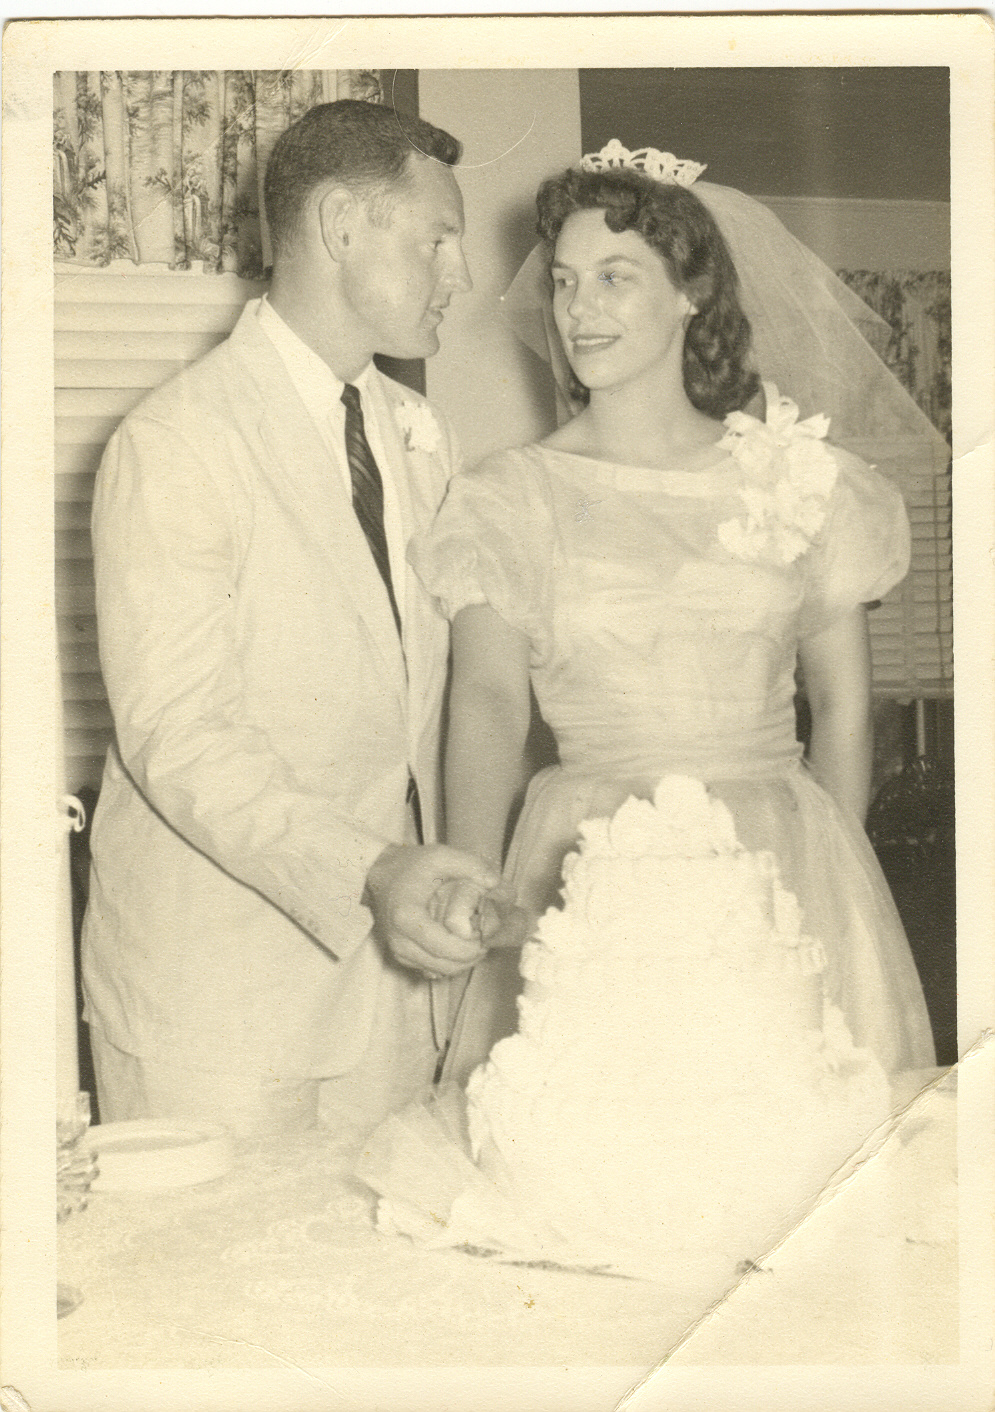 Van and Berna Wedding 1959